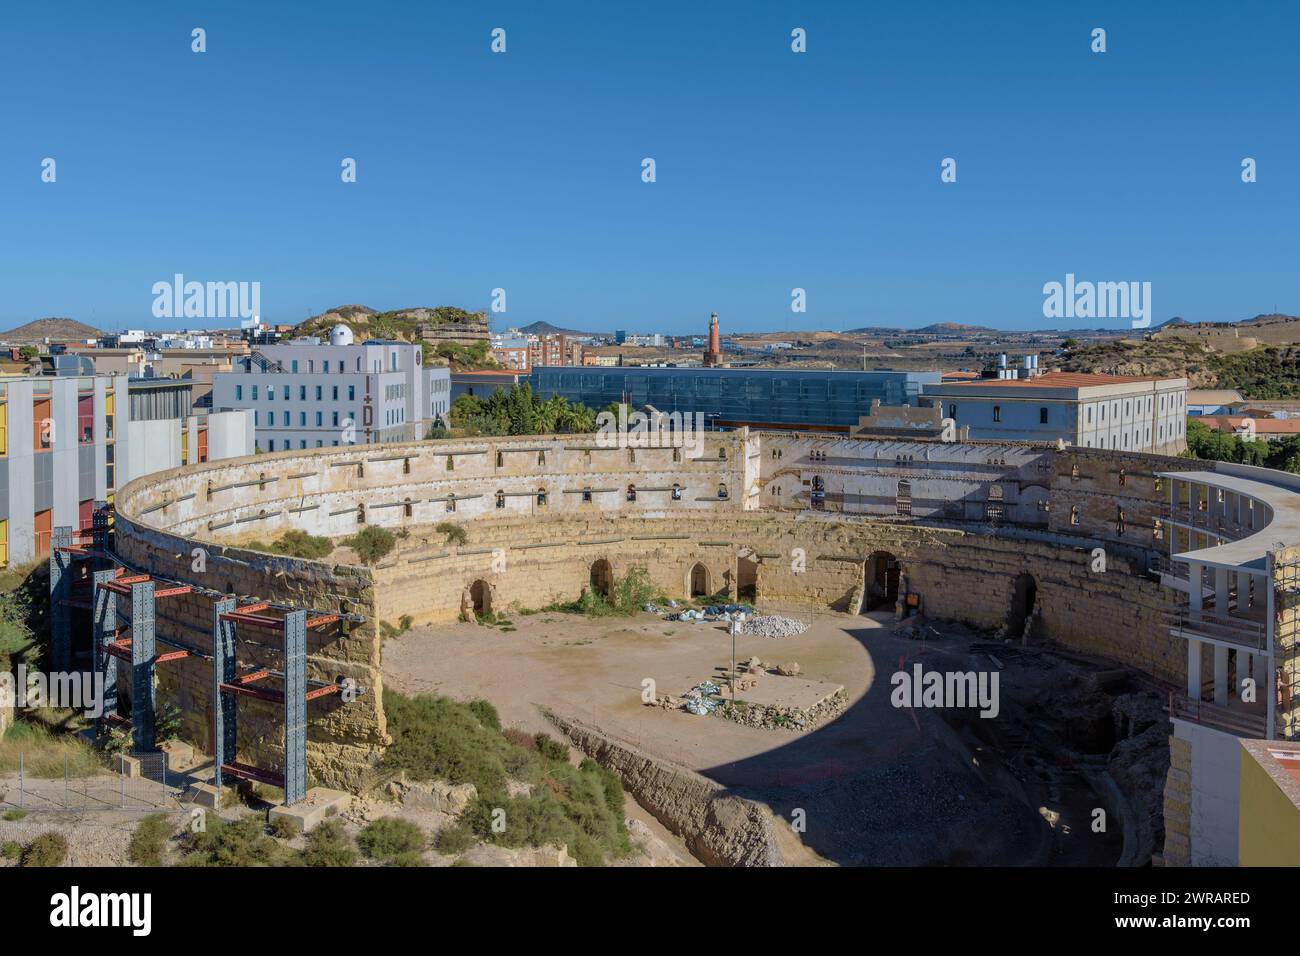 Rovine in restauro dell'anfiteatro romano del i secolo a.C., scoperta archeologica nella città di Cartagena, regione di Murcia, Spagna. Foto Stock